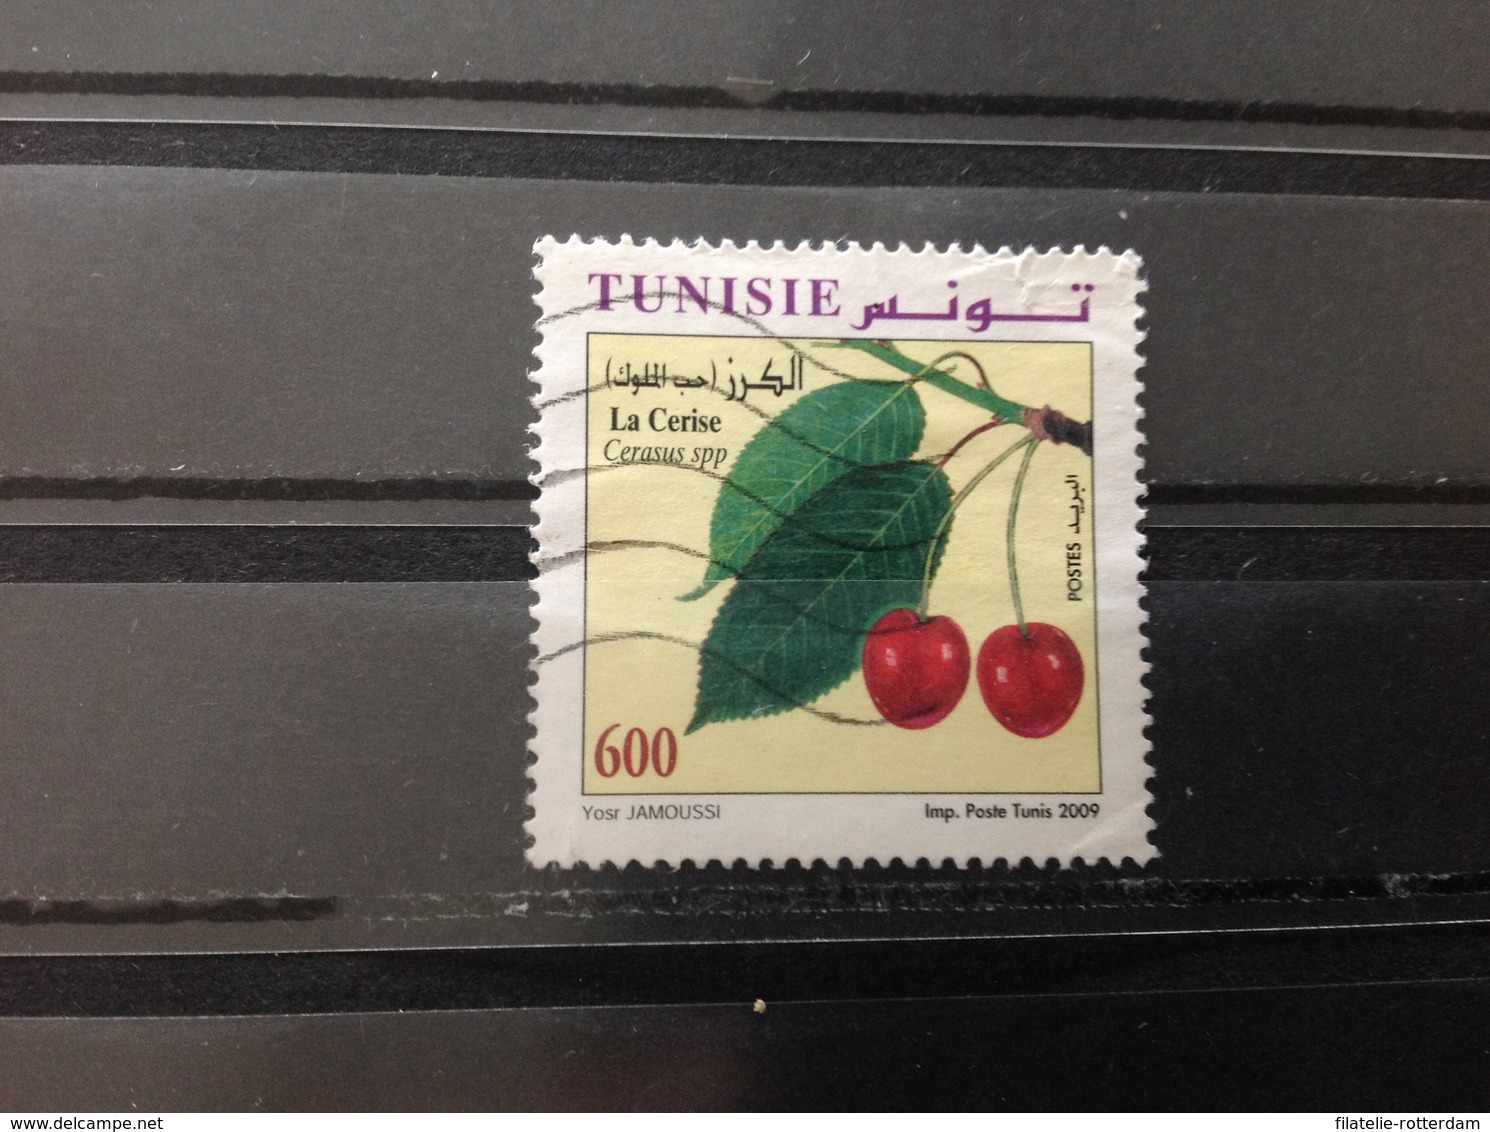 Tunesië / Tunesia - Fruit (600) 2009 - Tunesië (1956-...)